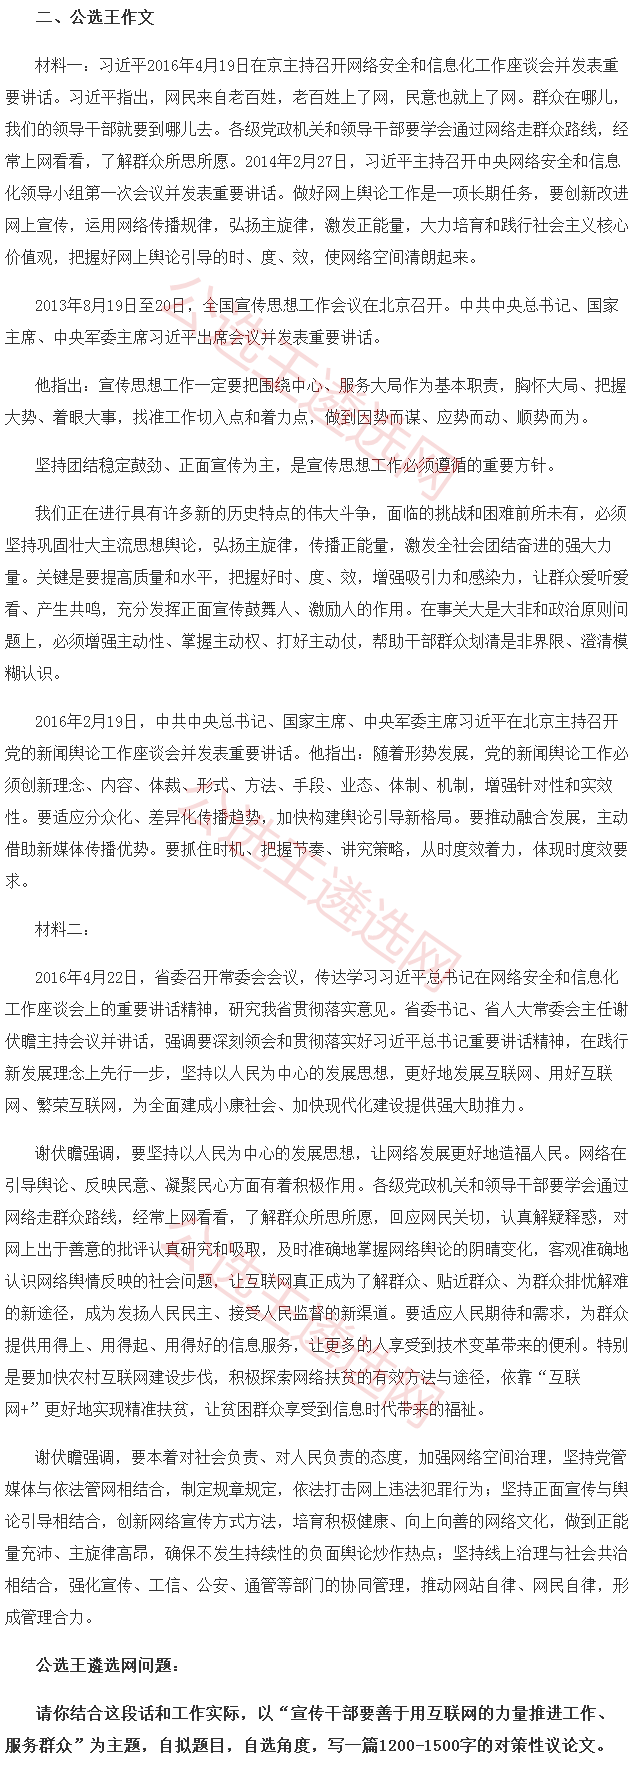 河南省委宣传部预测题1.2.png